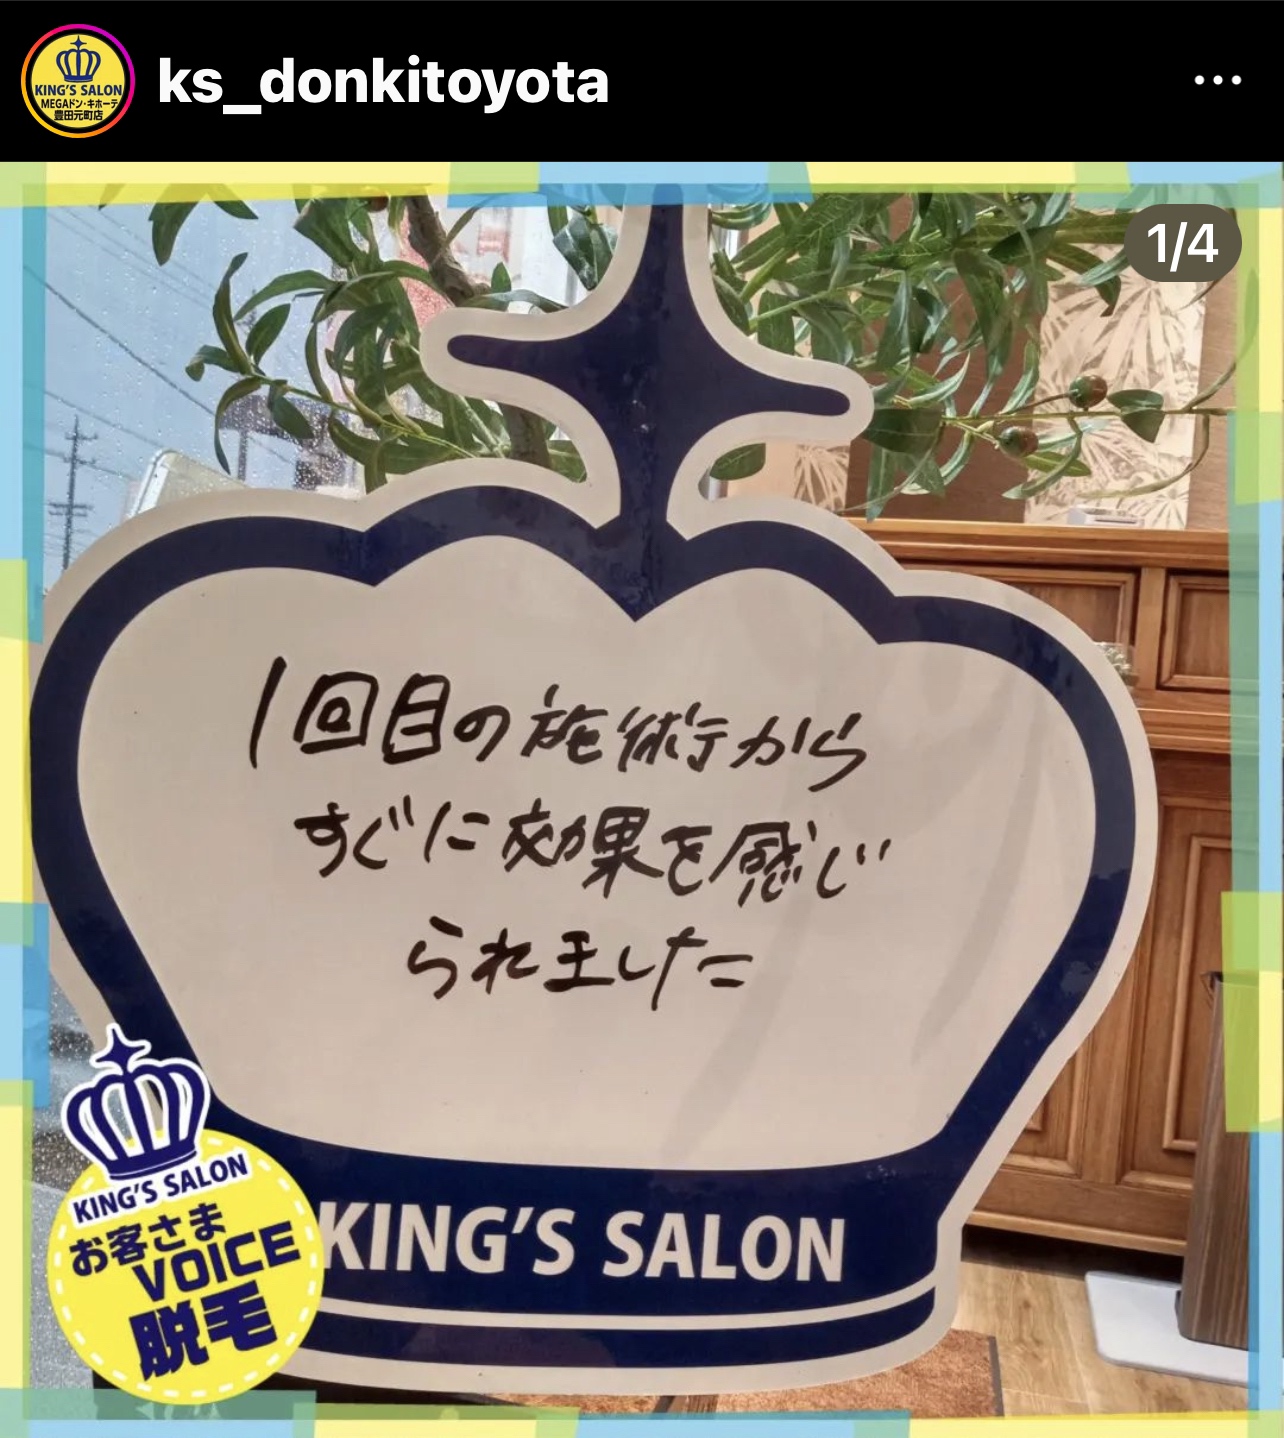 キングスサロンMEGAドン・キホーテ豊田元町店 お客様の声 サムネイル画像